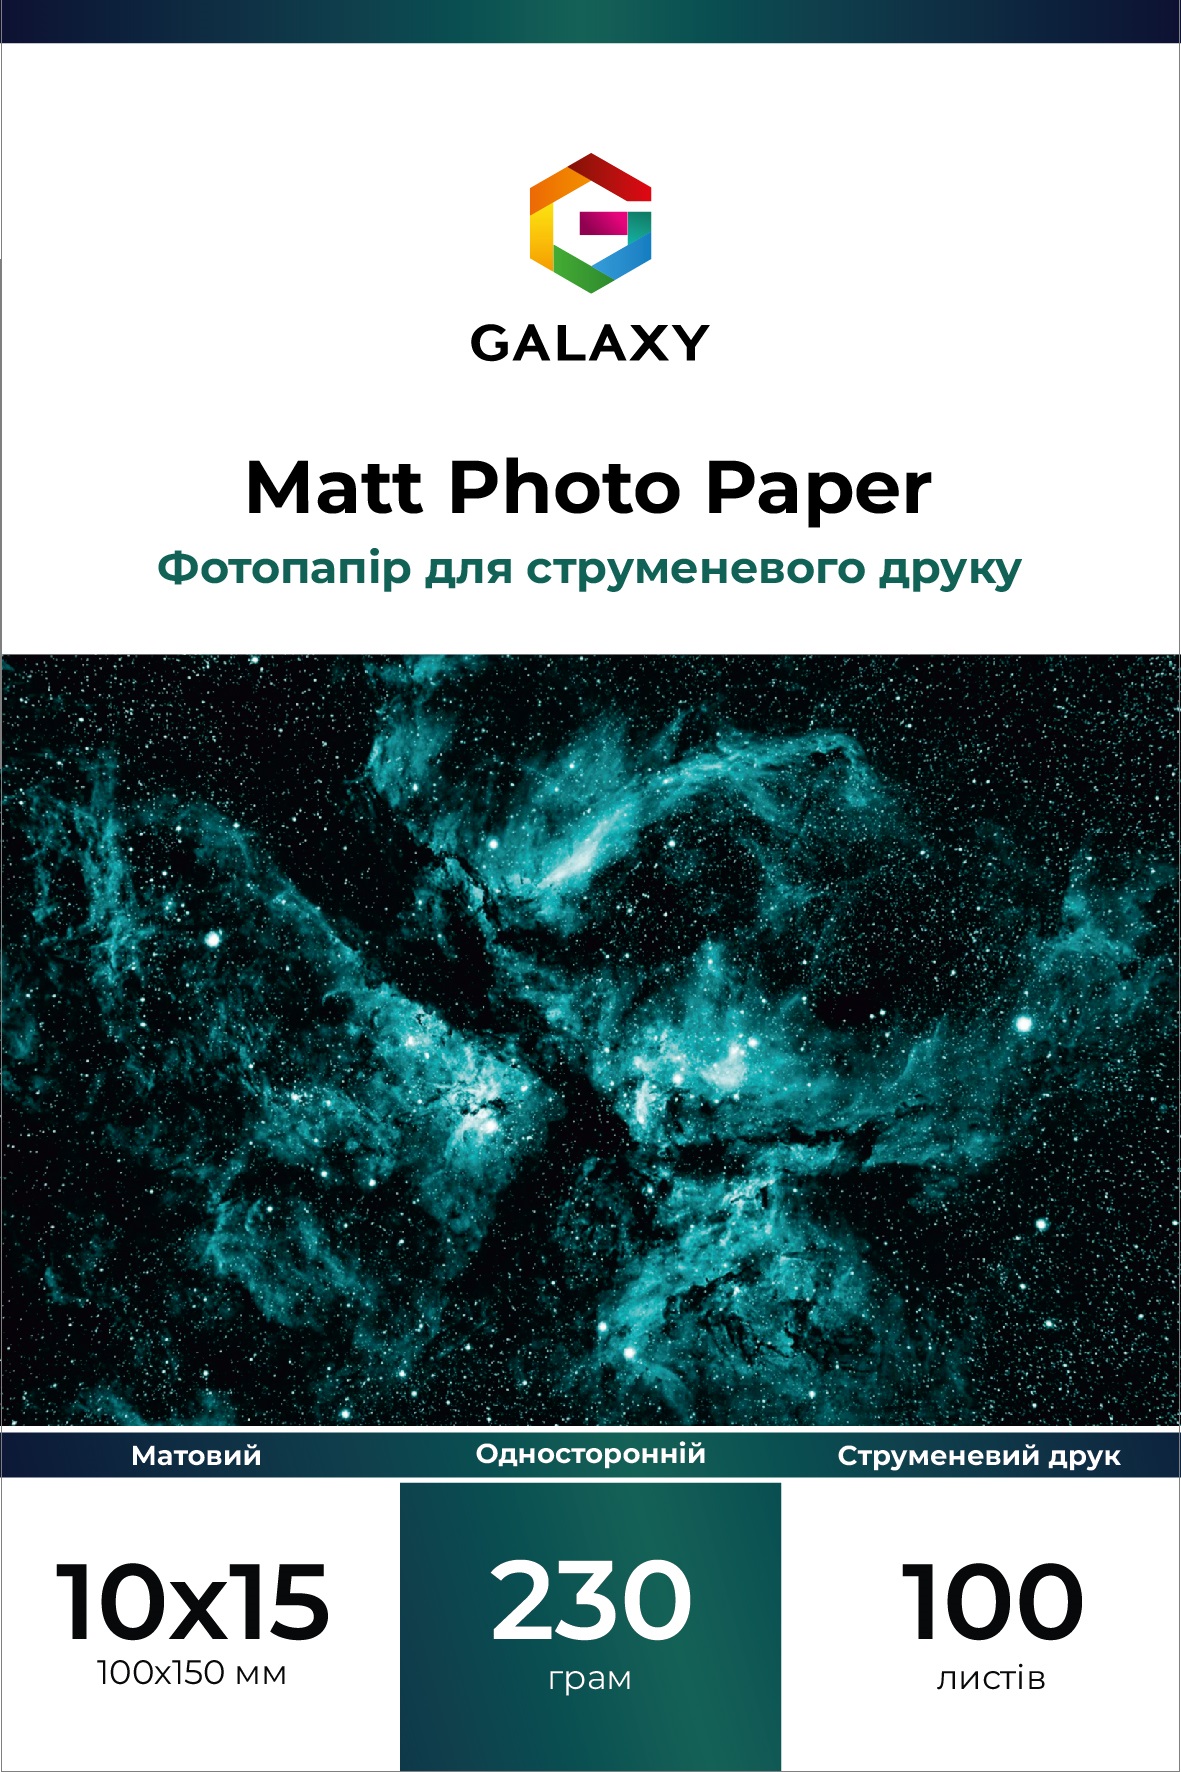 Galaxy 10x15 (100л) 230г/м2 матовий фотопапір | Купити в інтернет магазині